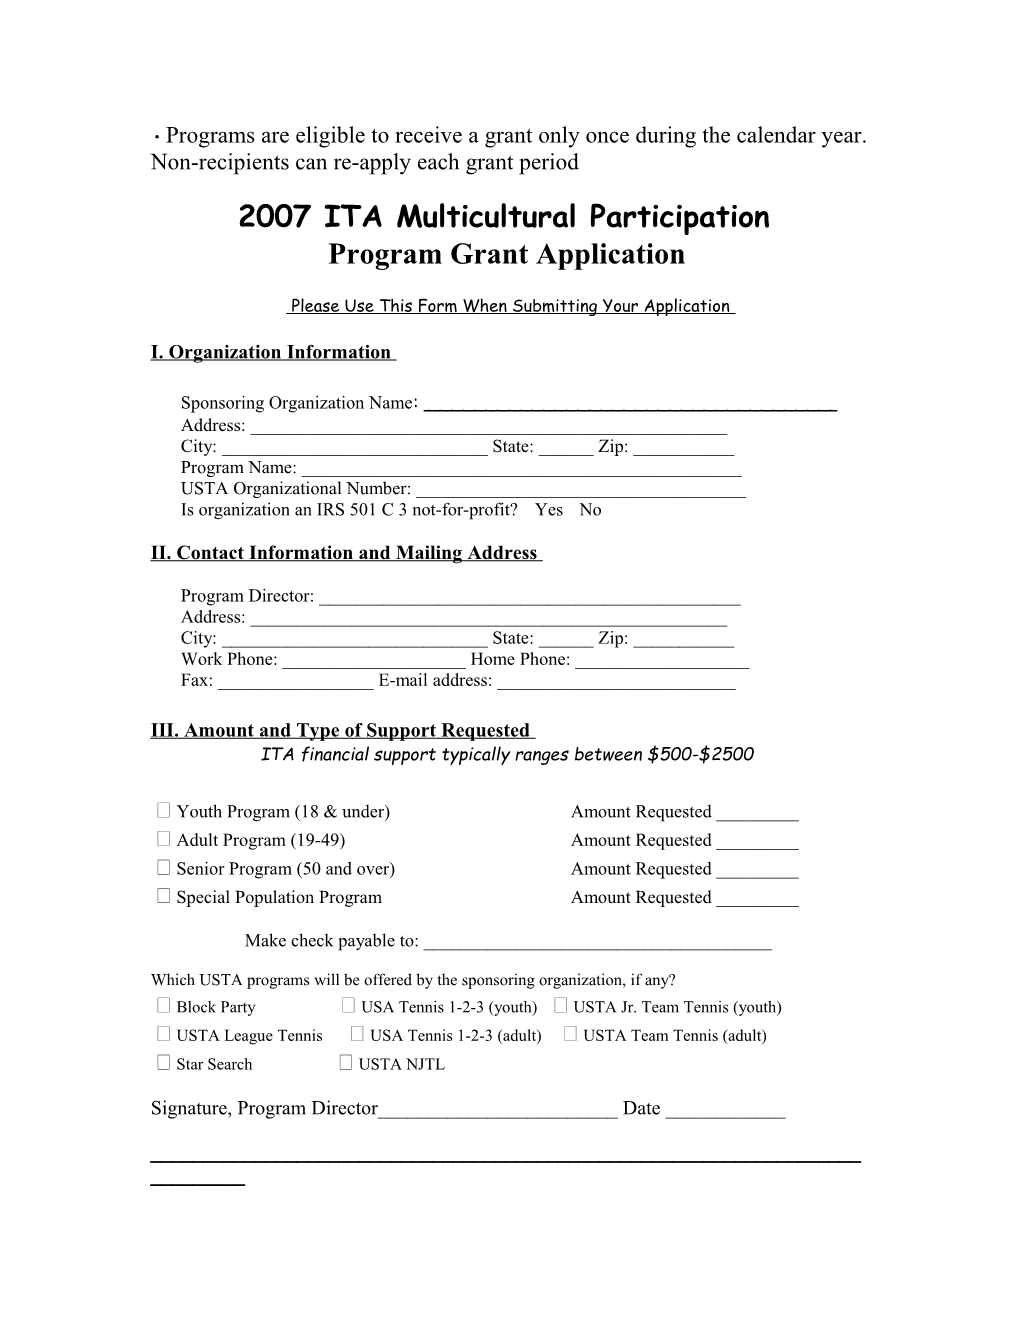 Return To: USTA/Intermountain Tennis Association